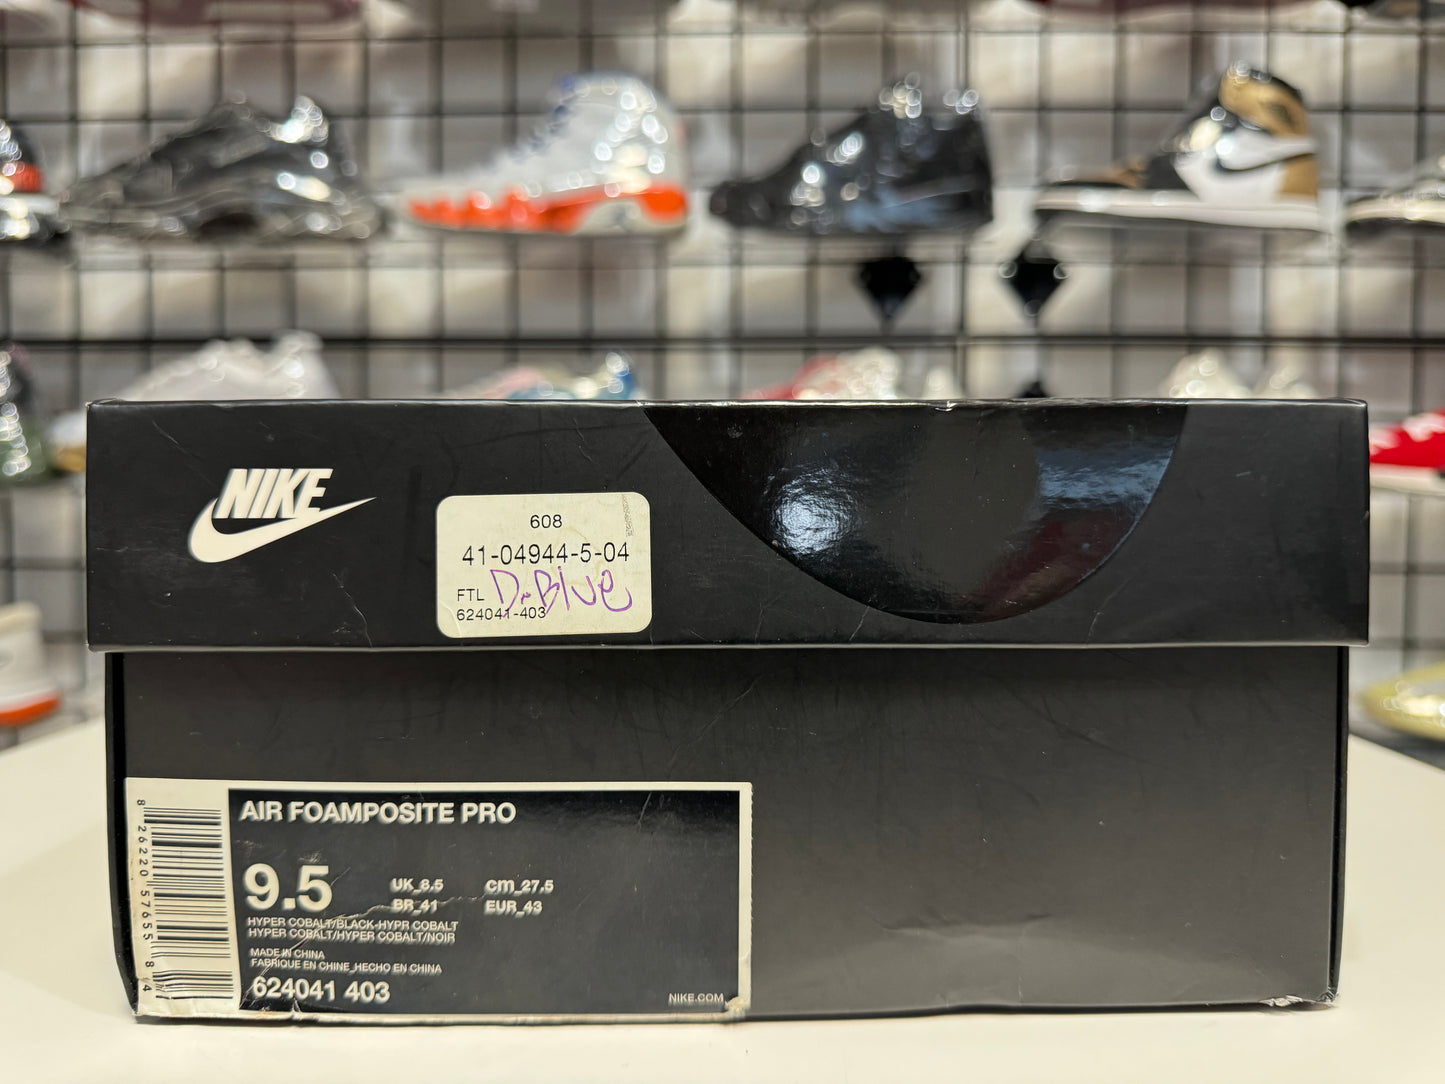 Nike Foamposite Hyper Cobalt size 9.5